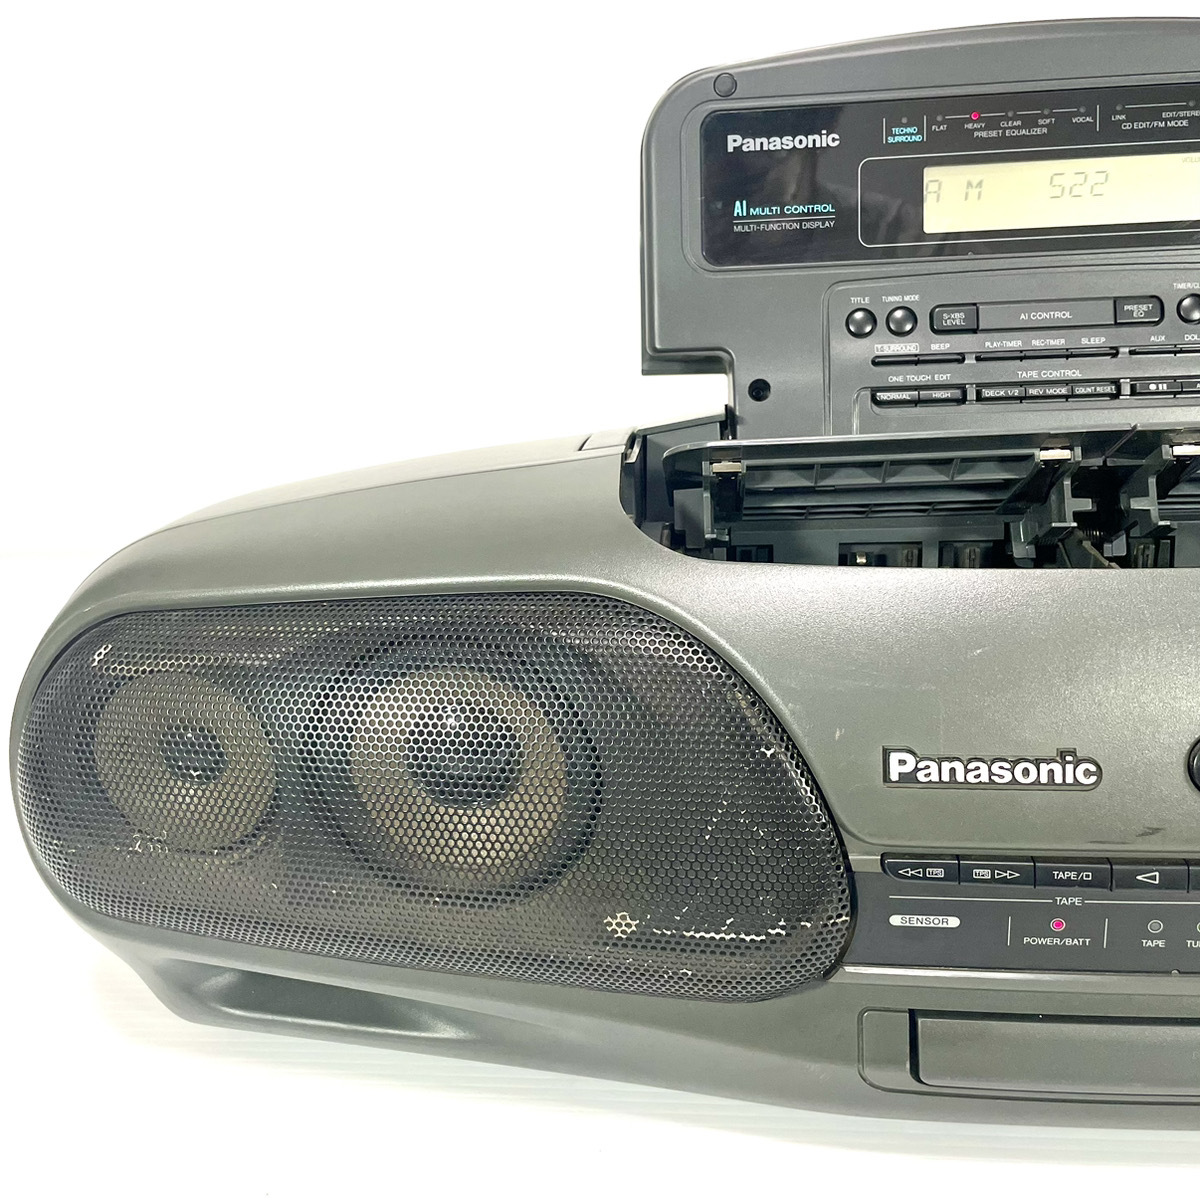 【稀少銘機/動作美品】Panasonic パナソニック RX-DT707 バブルラジカセ コブラトップ CD TAPE AM FM RX-DT909 の兄弟機の画像2